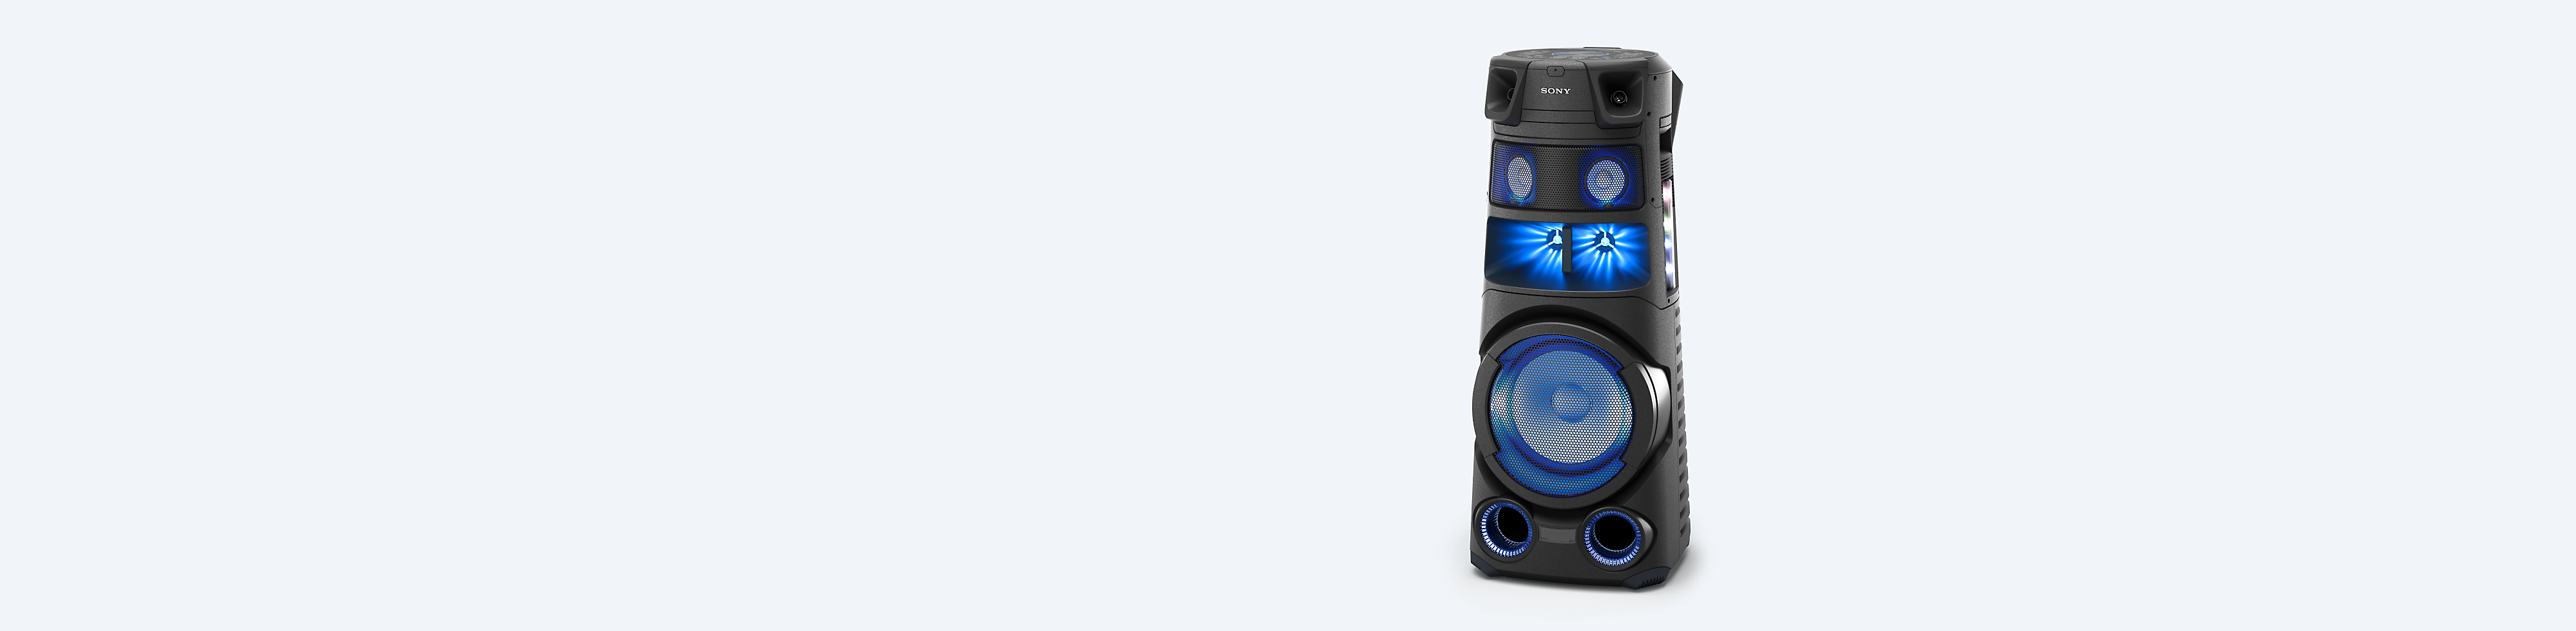 Аудиосистема мощного звука Sony на синем фоне